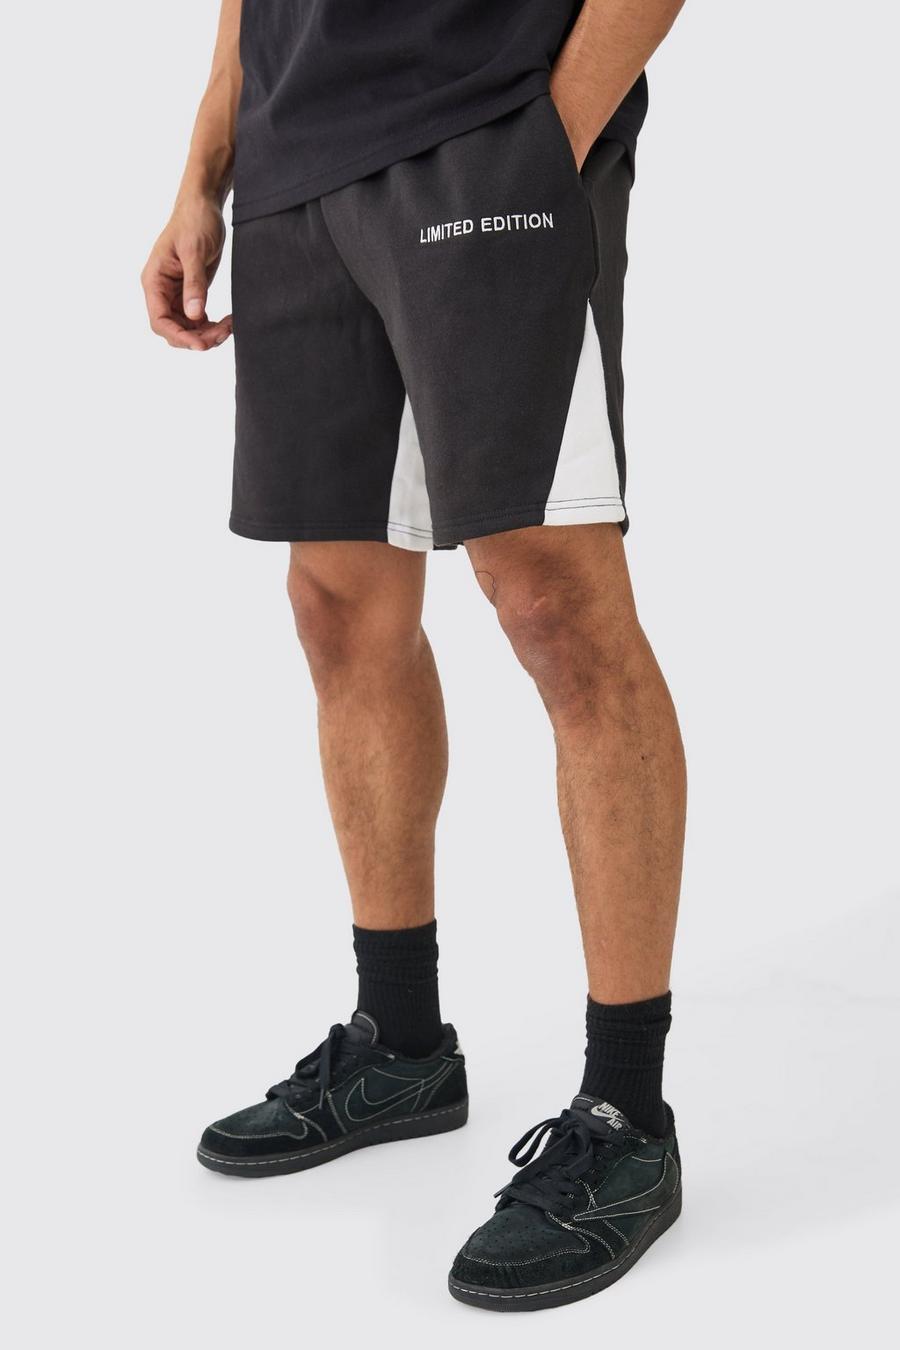 Pantalón corto holgado con refuerzo Limited Edition, Black